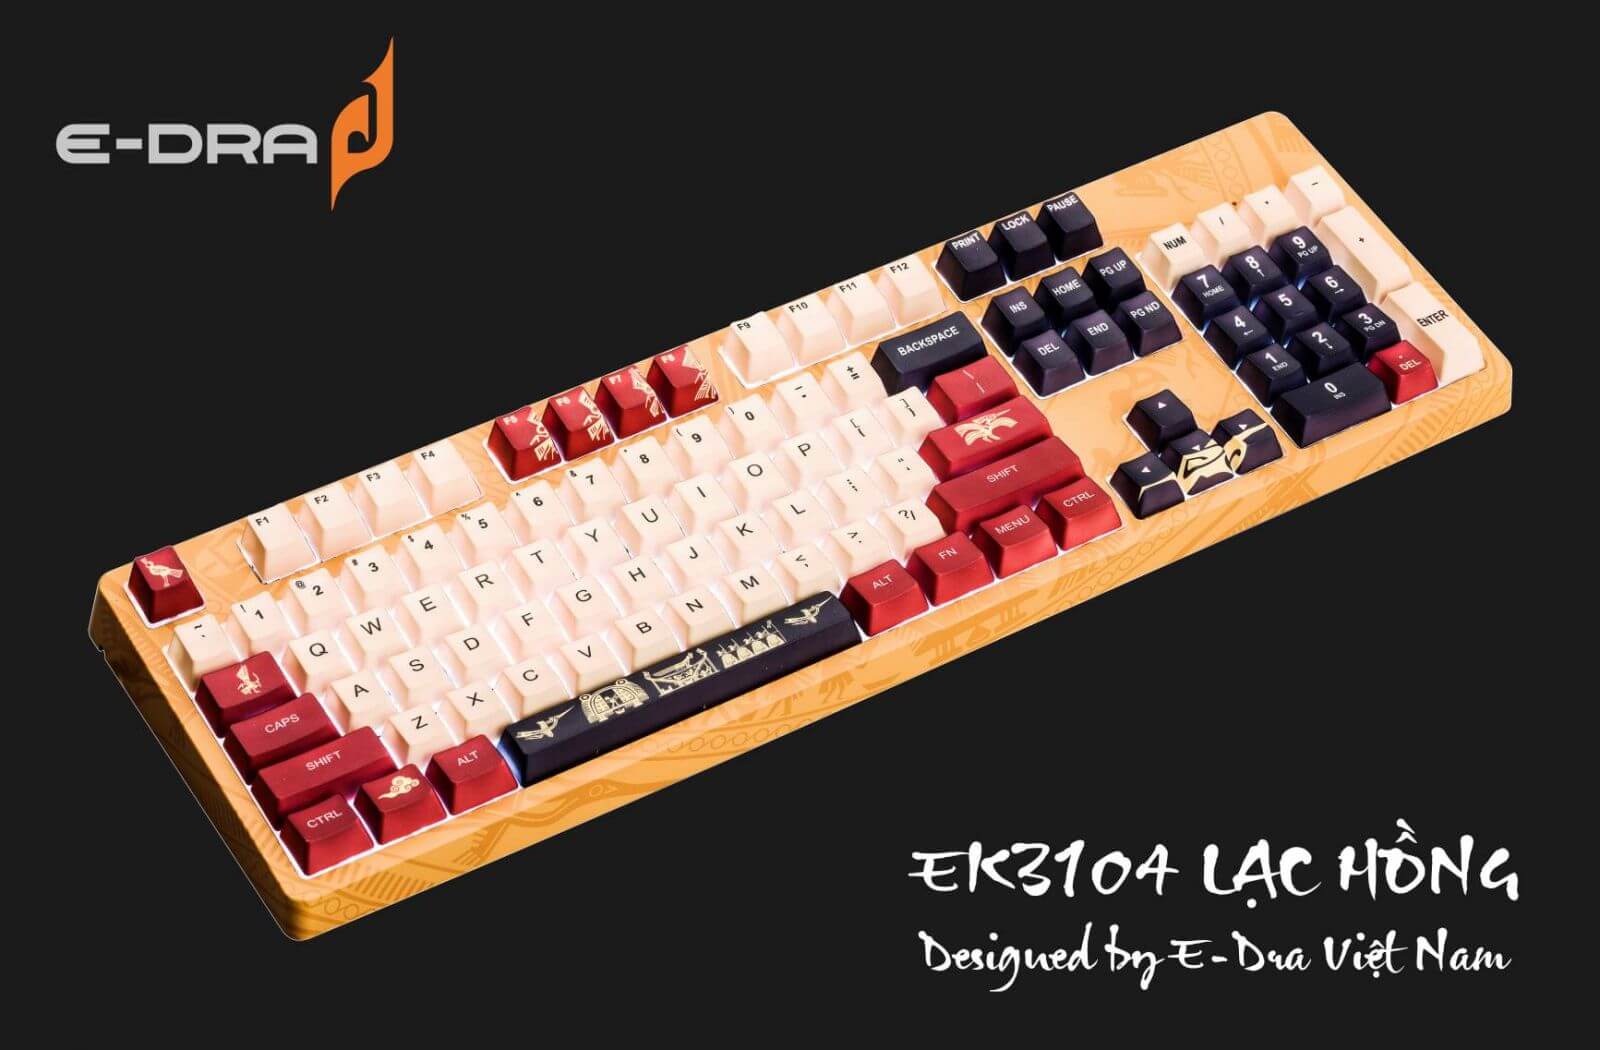 Bàn phím E-Dra có đa dạng các thiết kế hiện đại, phù hợp với người Việt